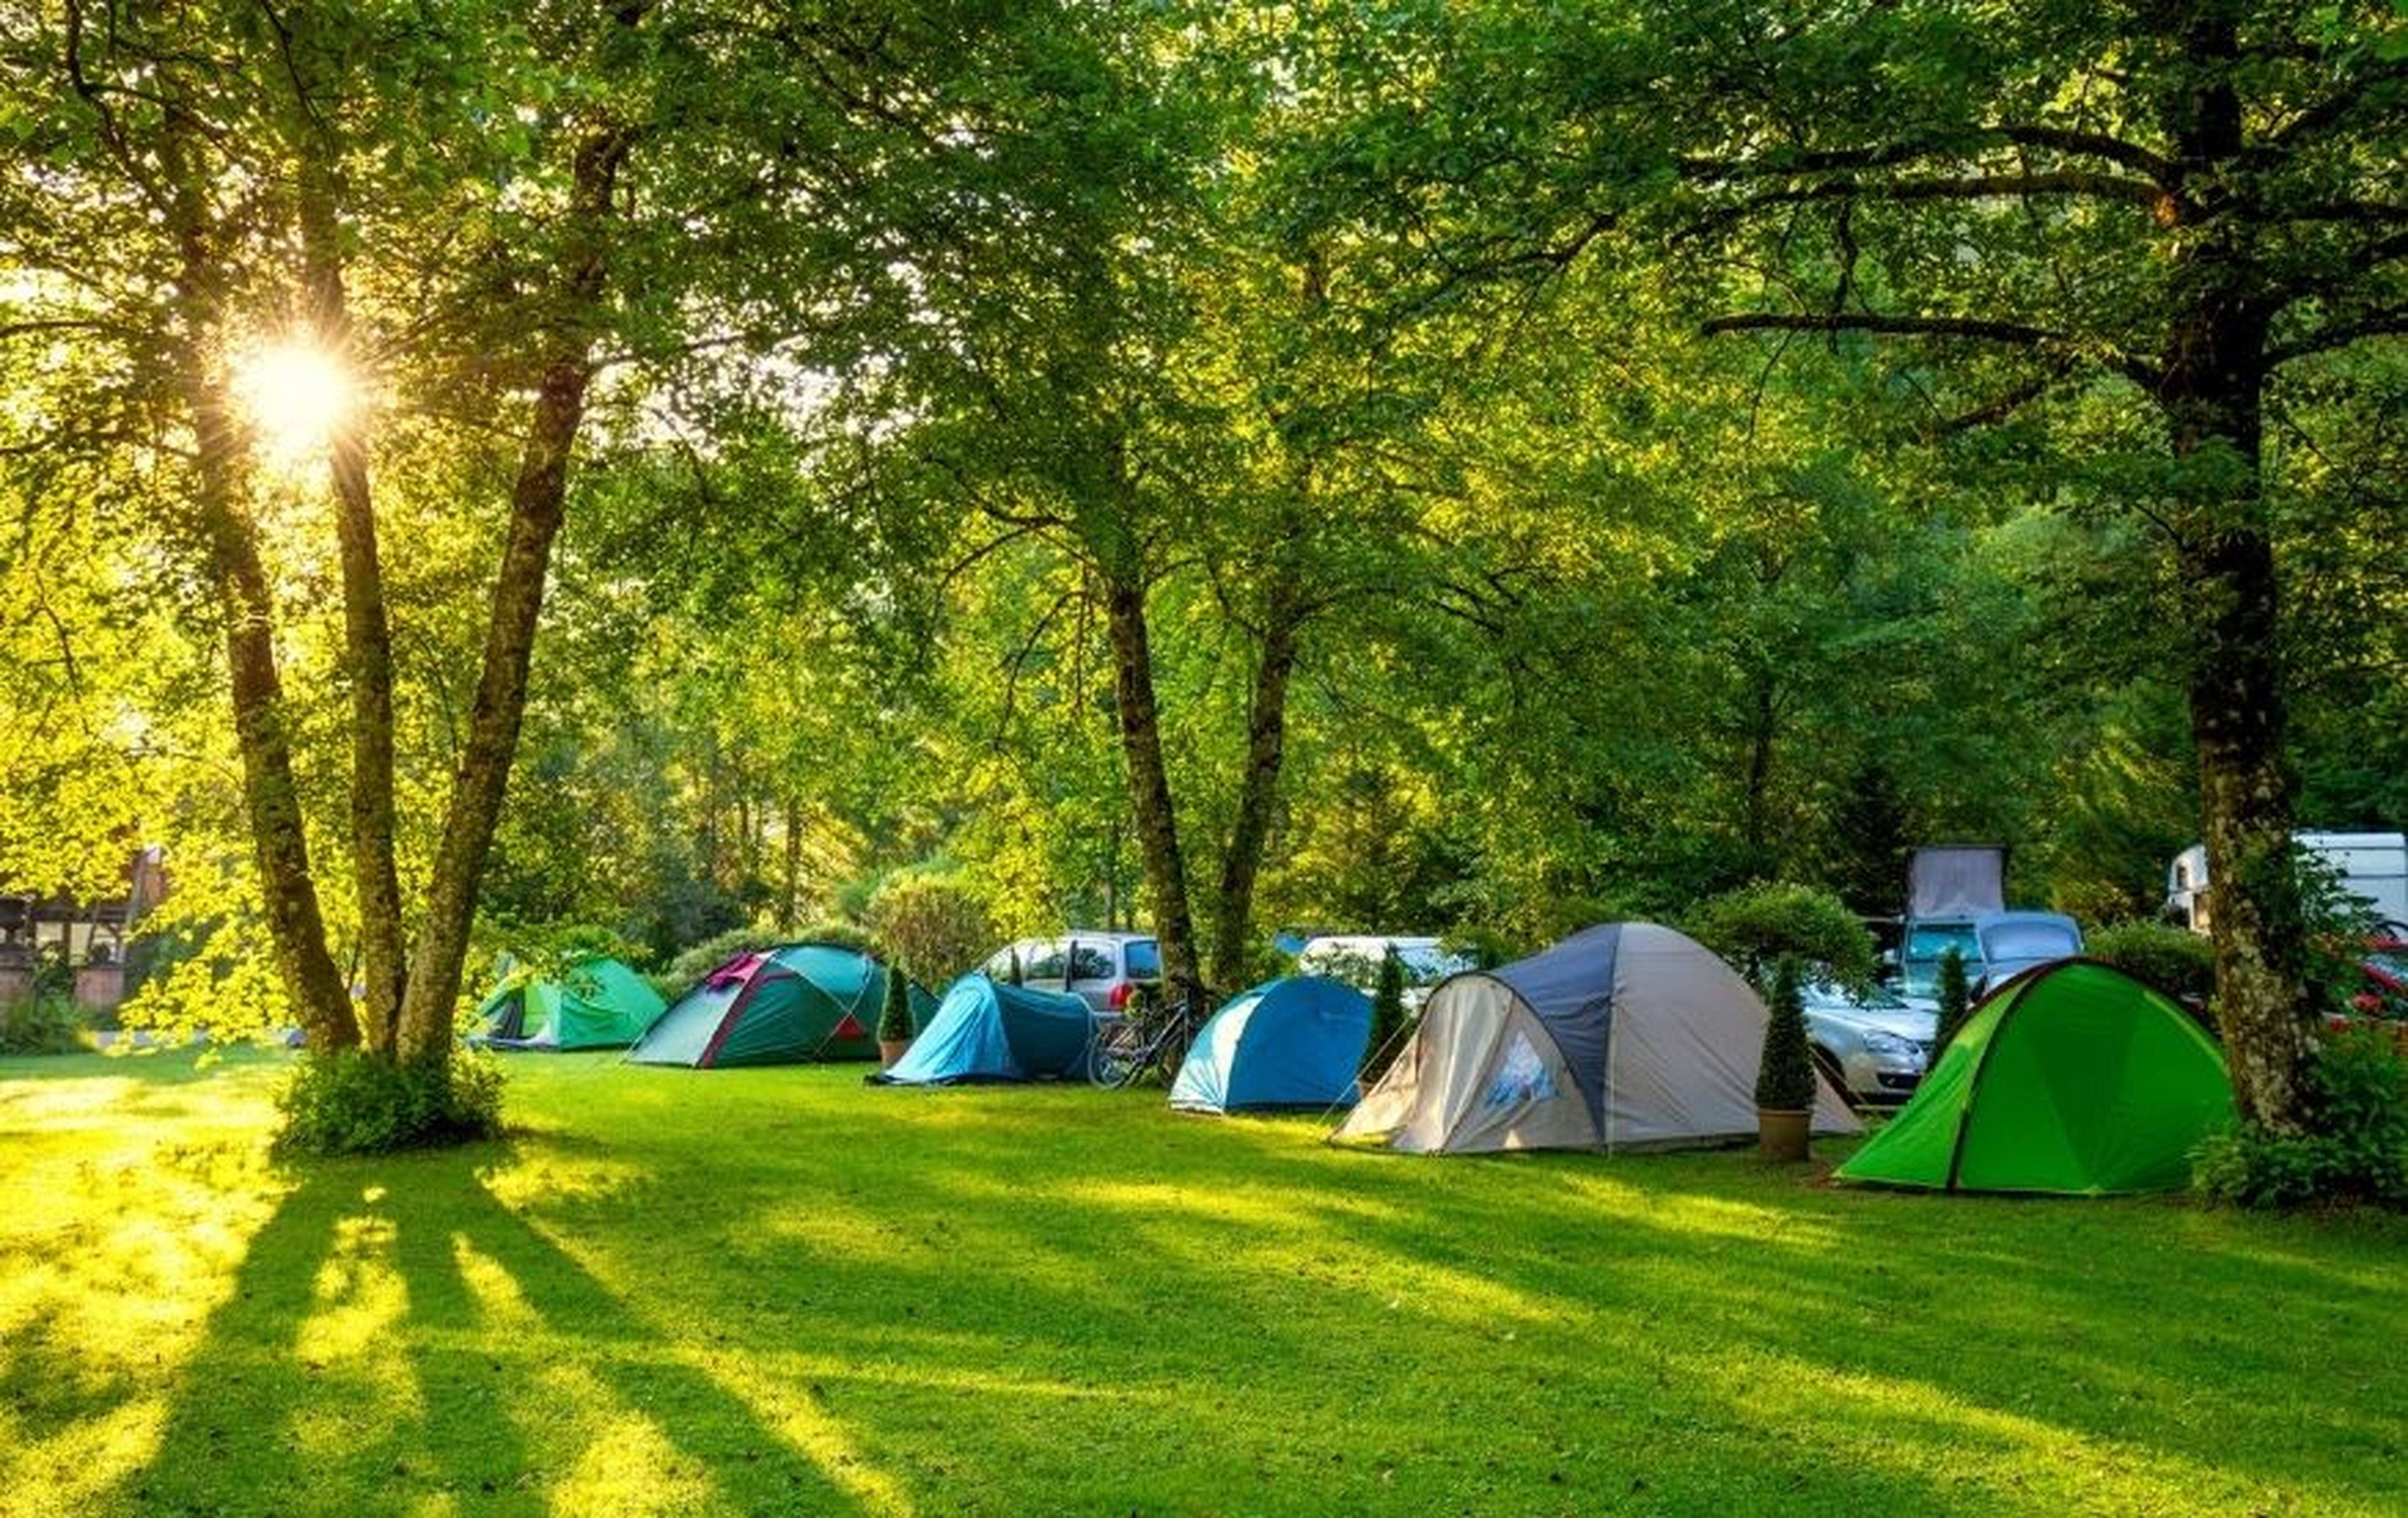 Photo camp. Палатка Camping Tent. Палатка Ronin Camp. Кемпинг Увильды. Привольная Поляна палаточный лагерь.